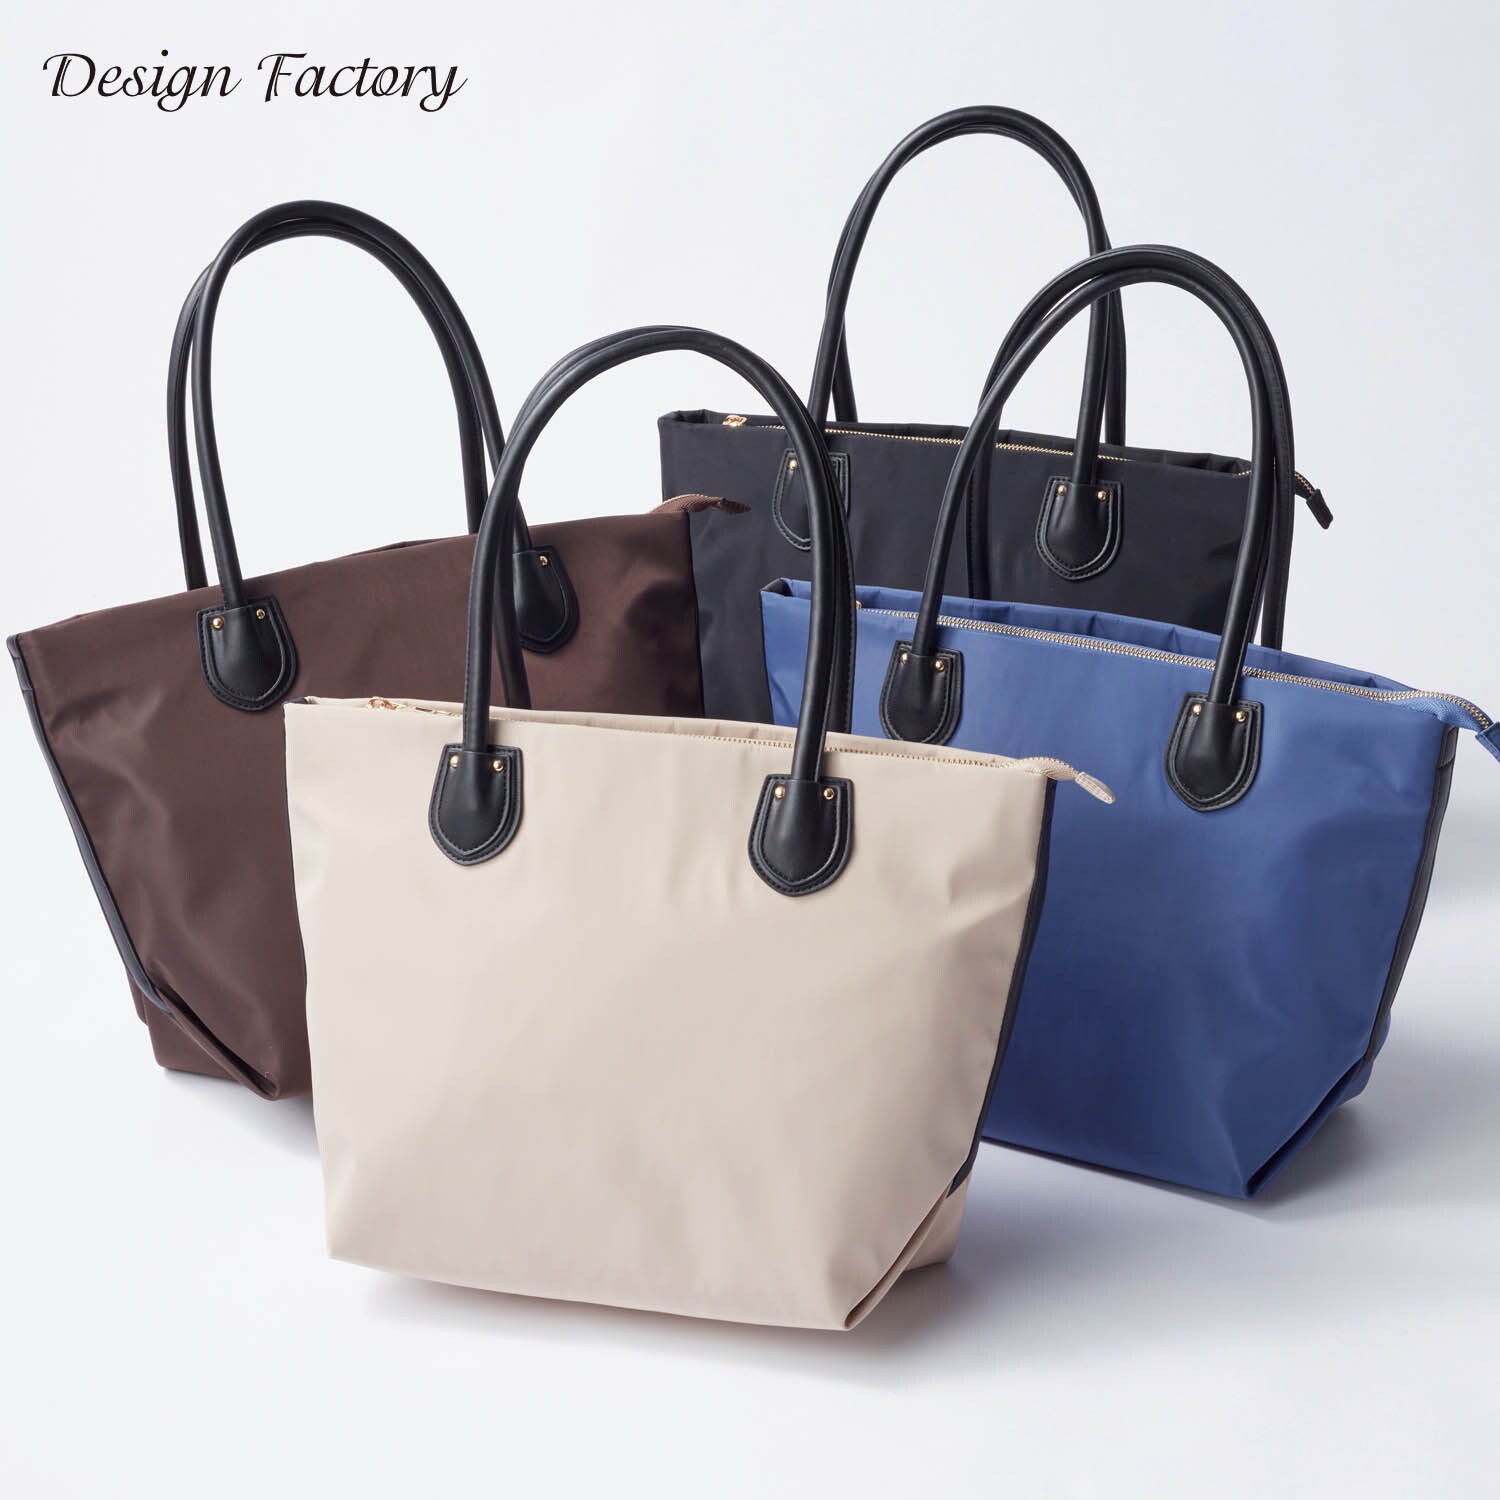 【デザインファクトリー/Design Factory】ナイロントートバッグ【軽量】【A4対応】